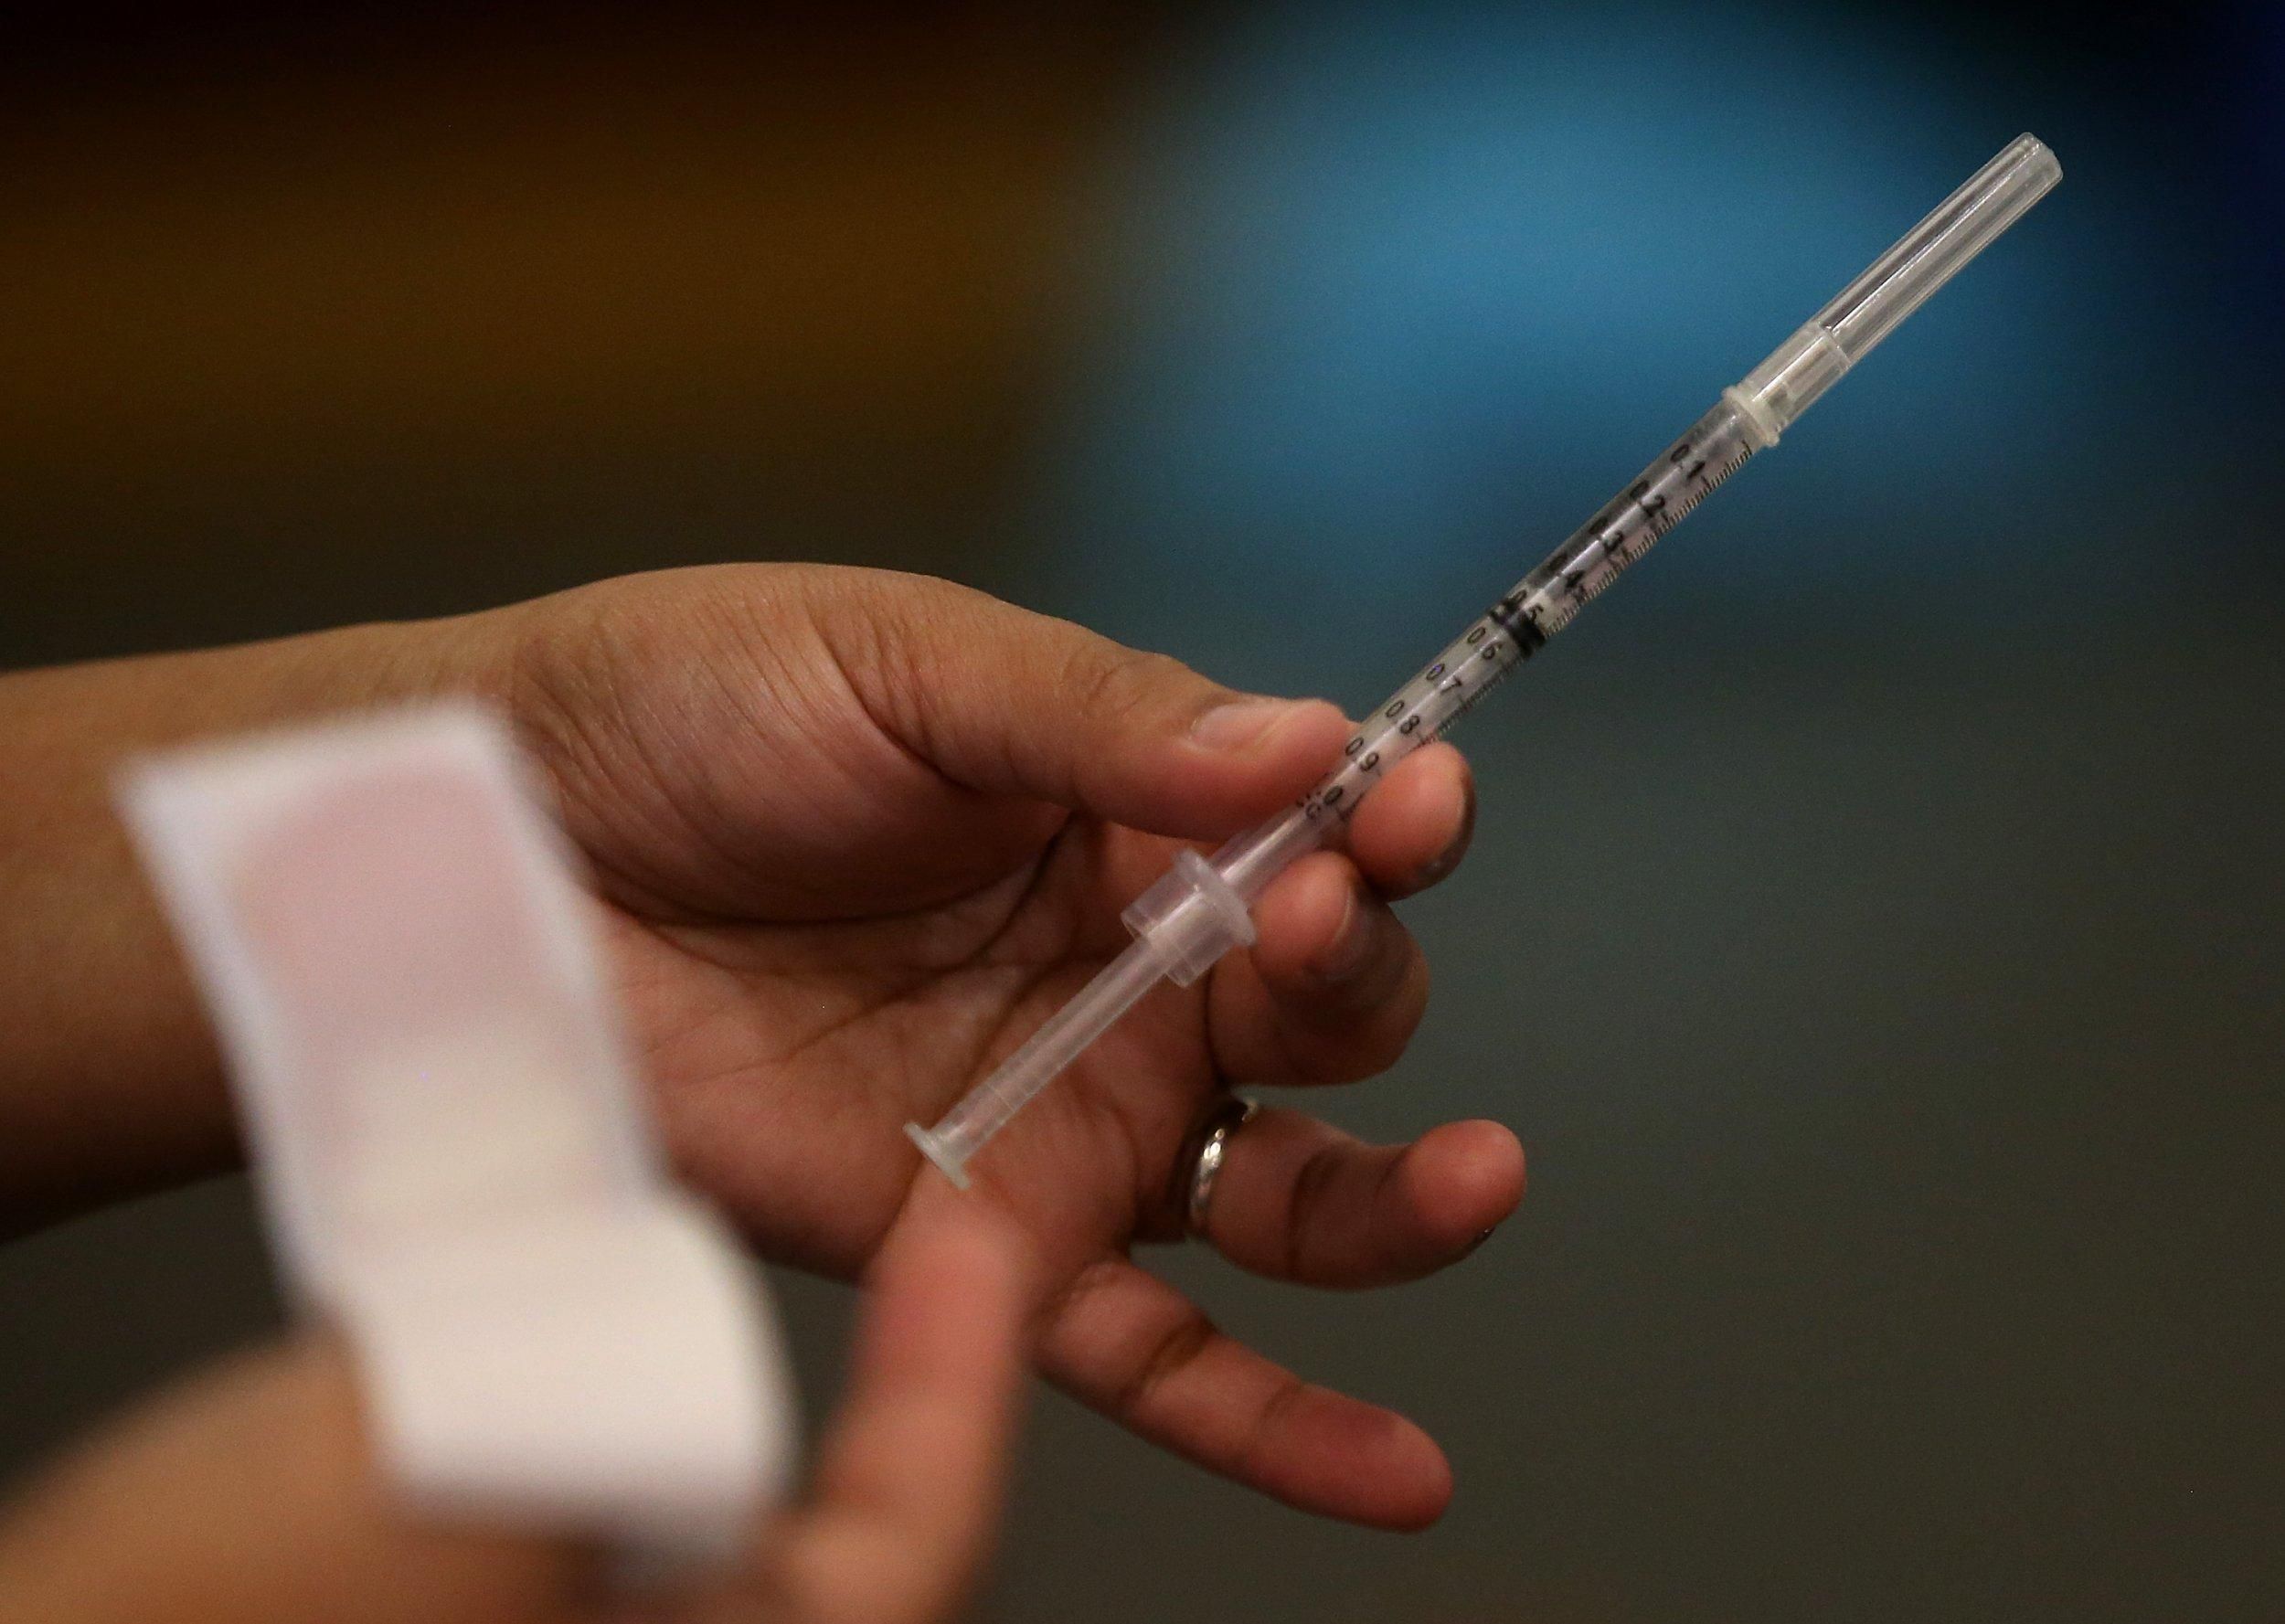 ВООЗ схвалила індійську вакцину Covaxin проти коронавірусу: що відомо про препарат - Новини Здоров’я